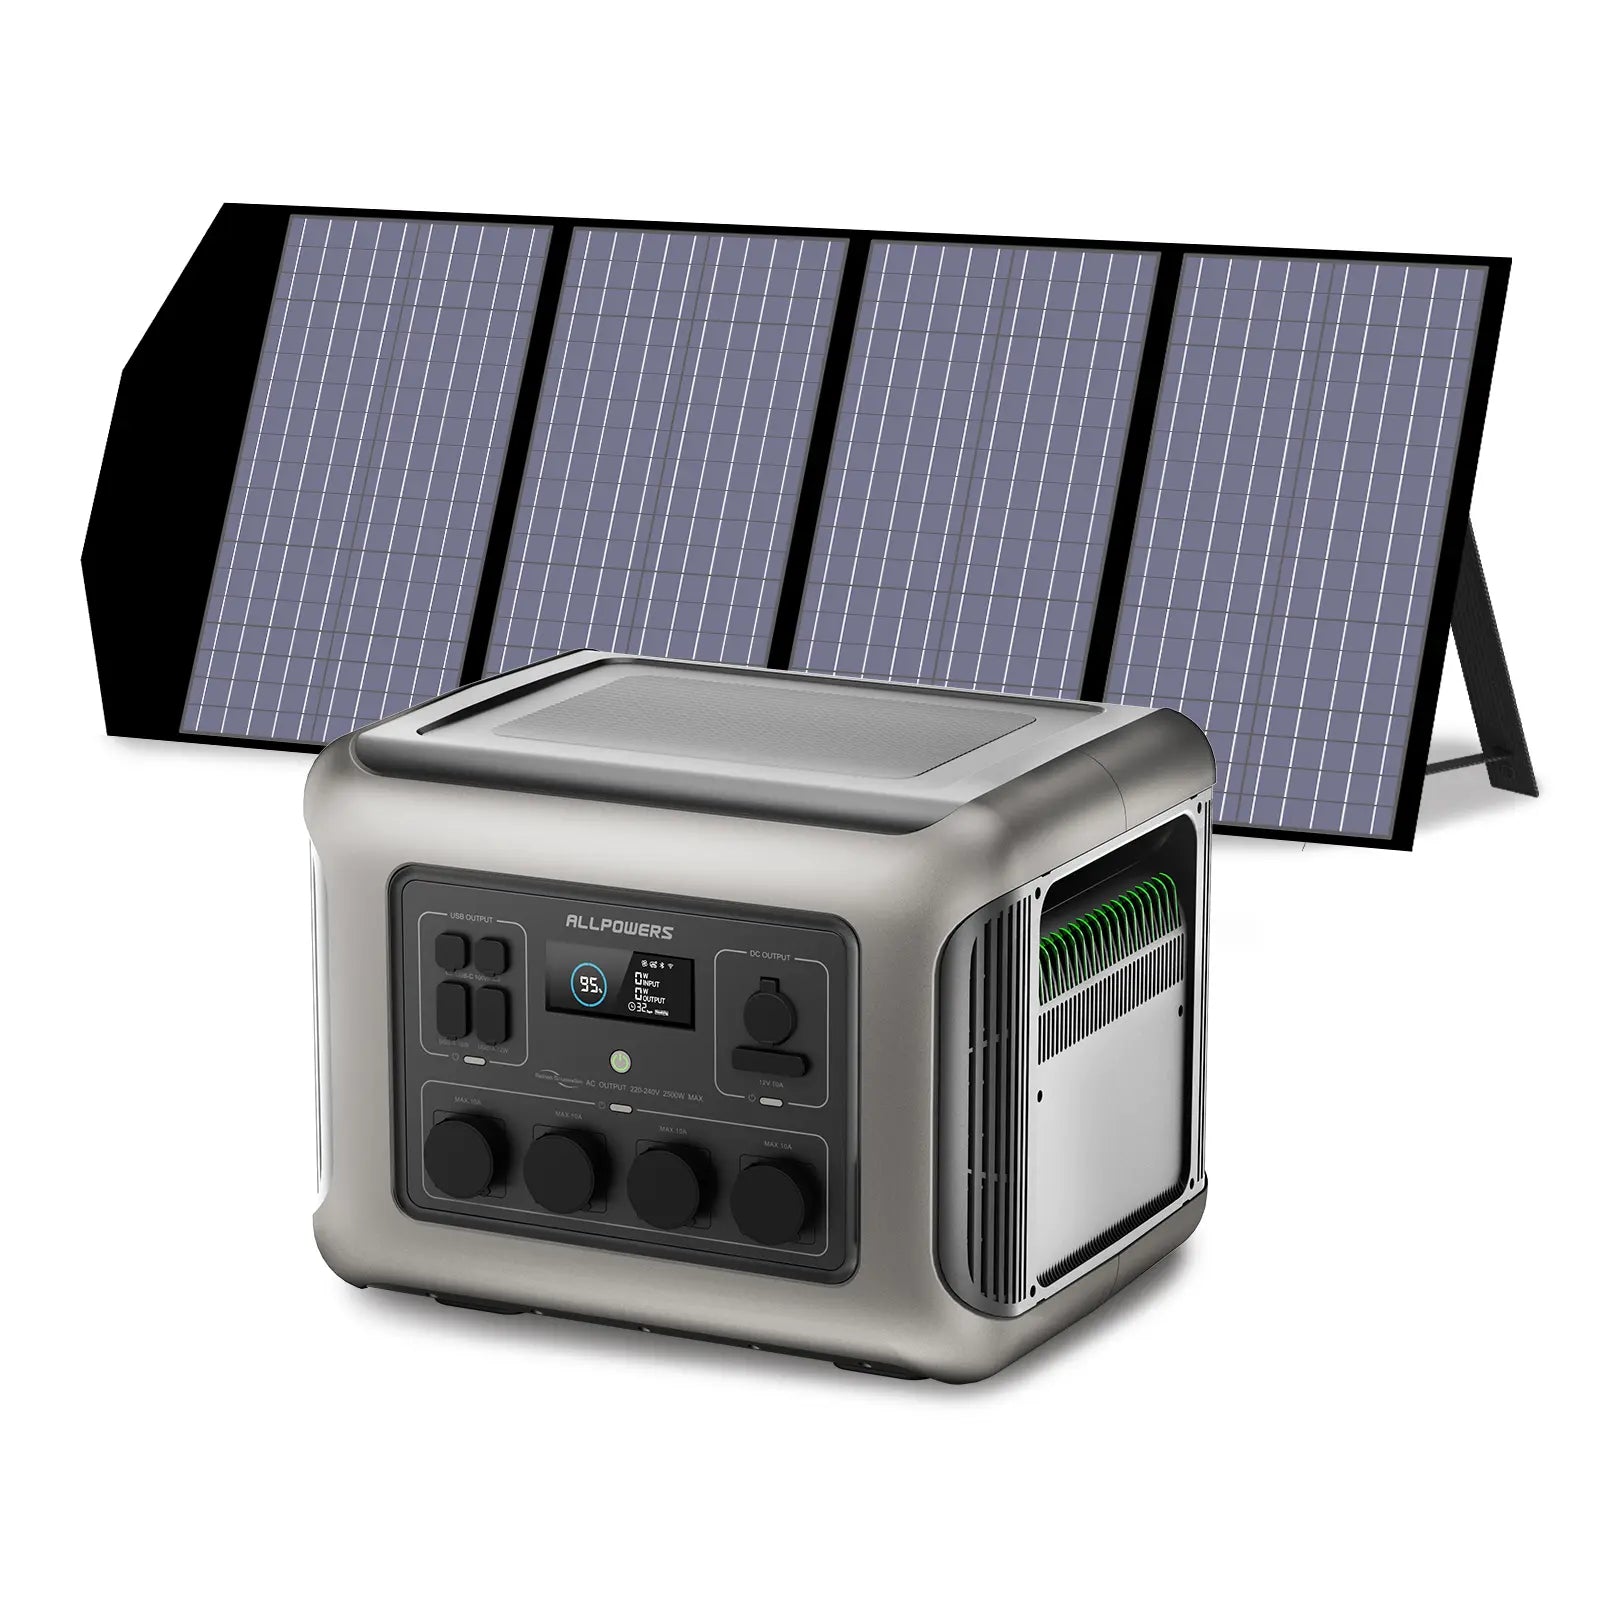 ALLPOWERS 2500W Generatore Solare (R2500 + SP029 140W Pannello Solare)